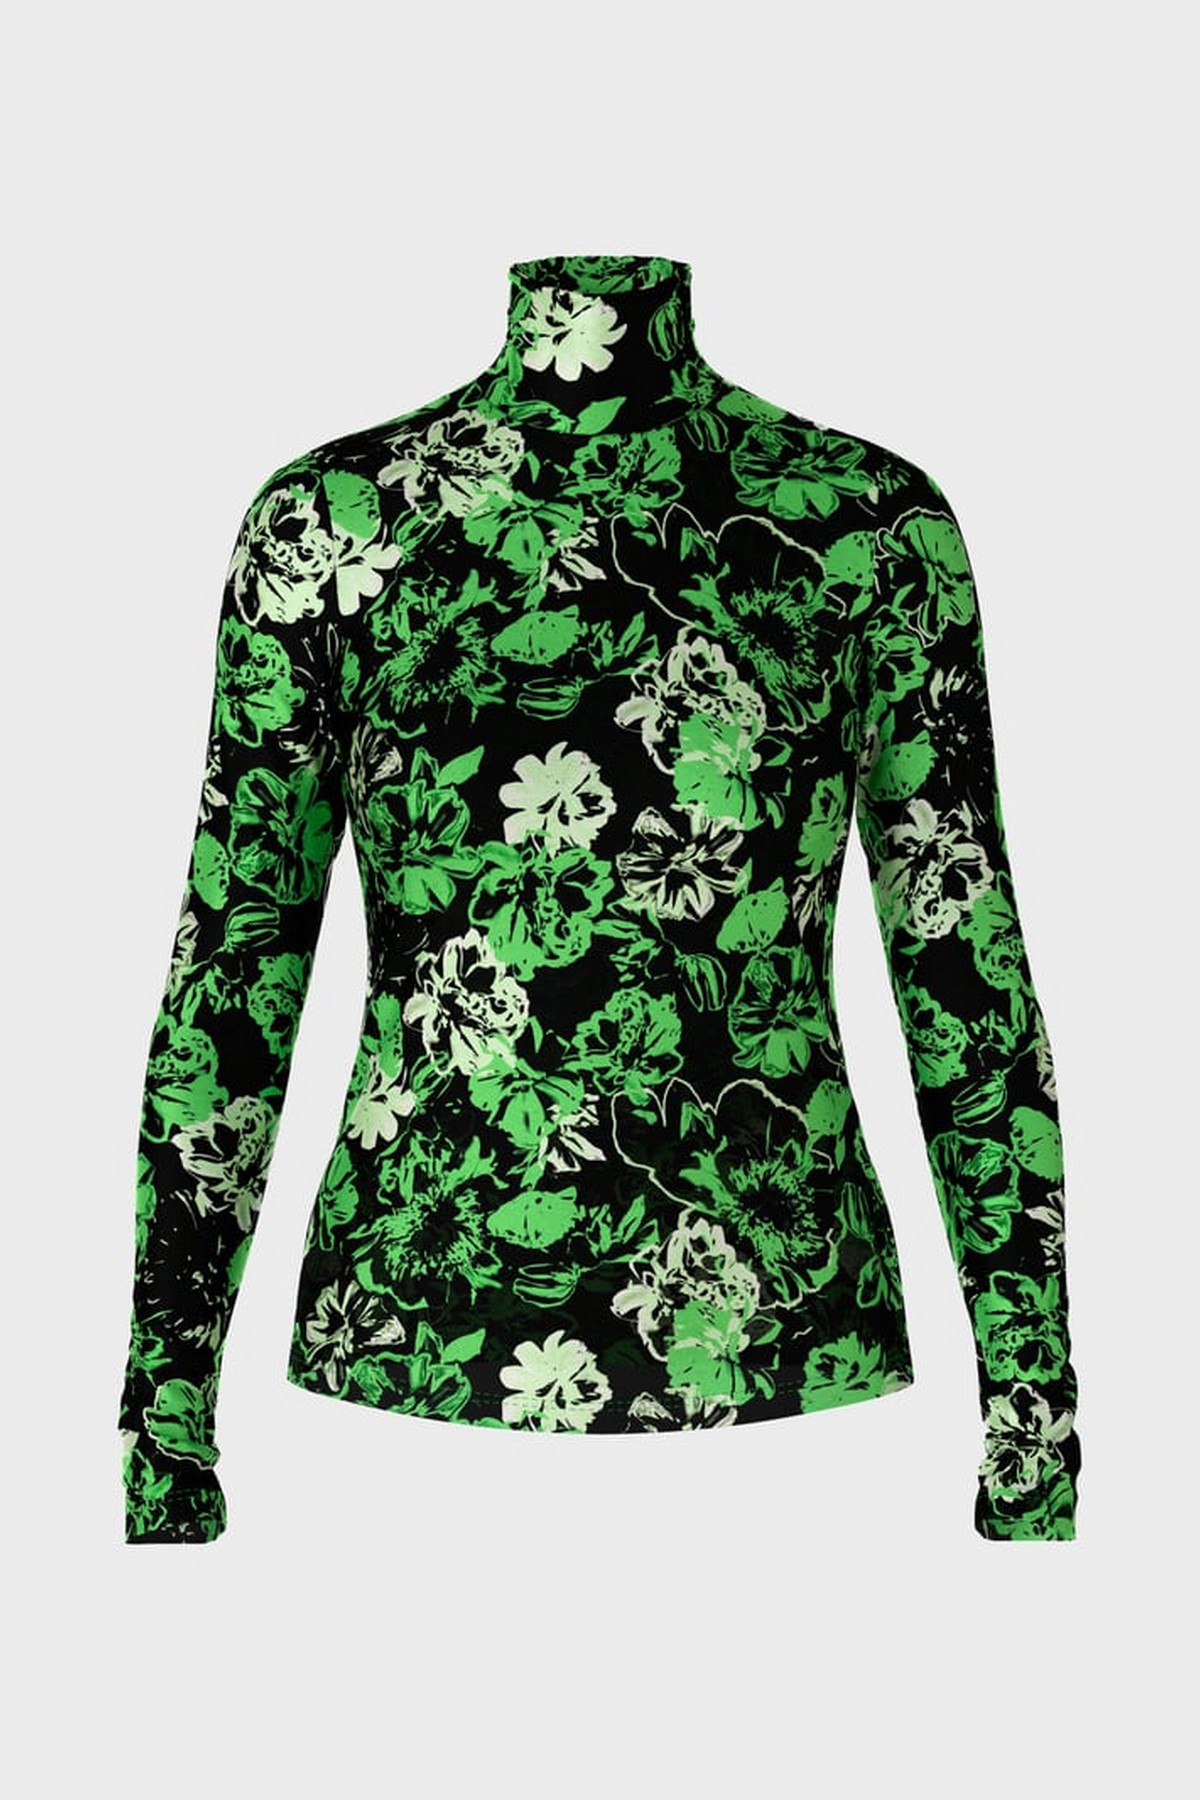 Truitje rolkraag bloemprint in de kleur zwart groen van het merk Marc Cain Collections